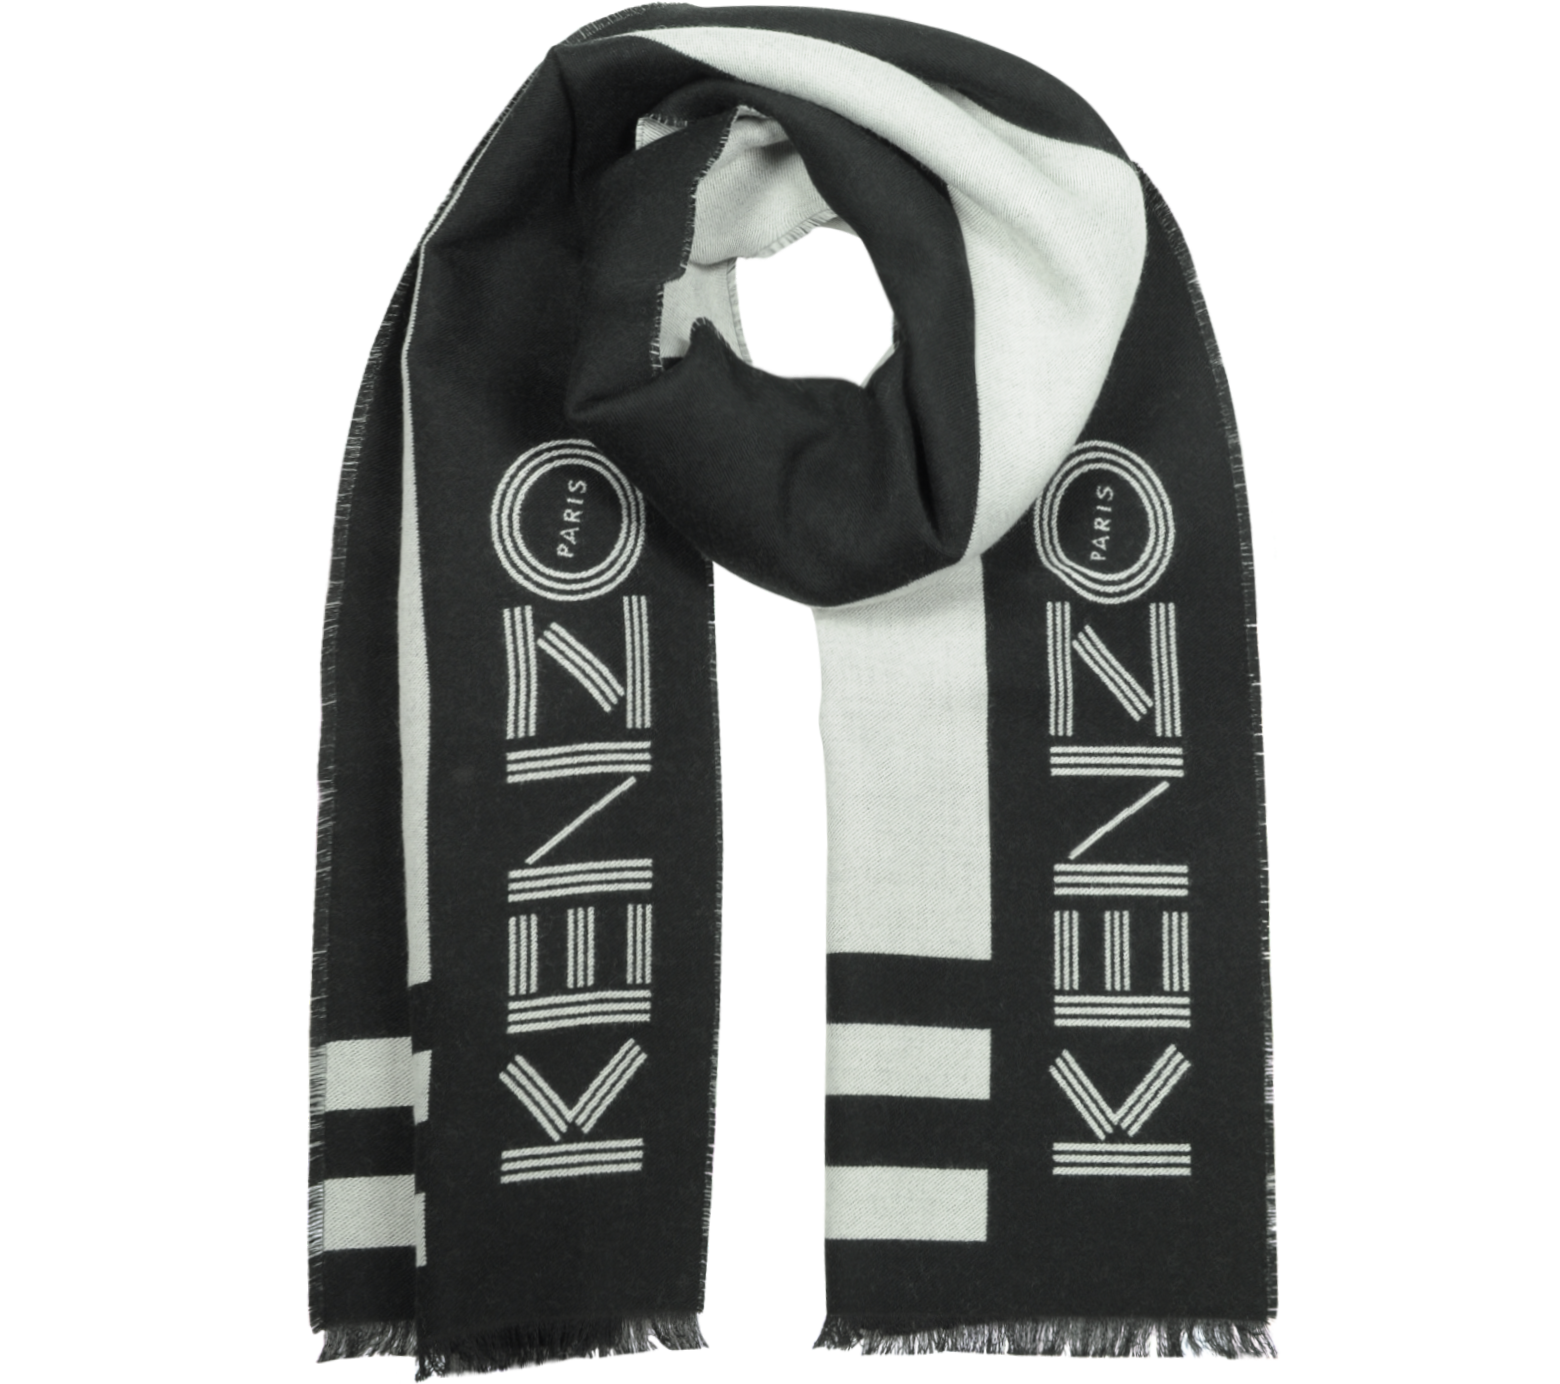 kenzo scarf